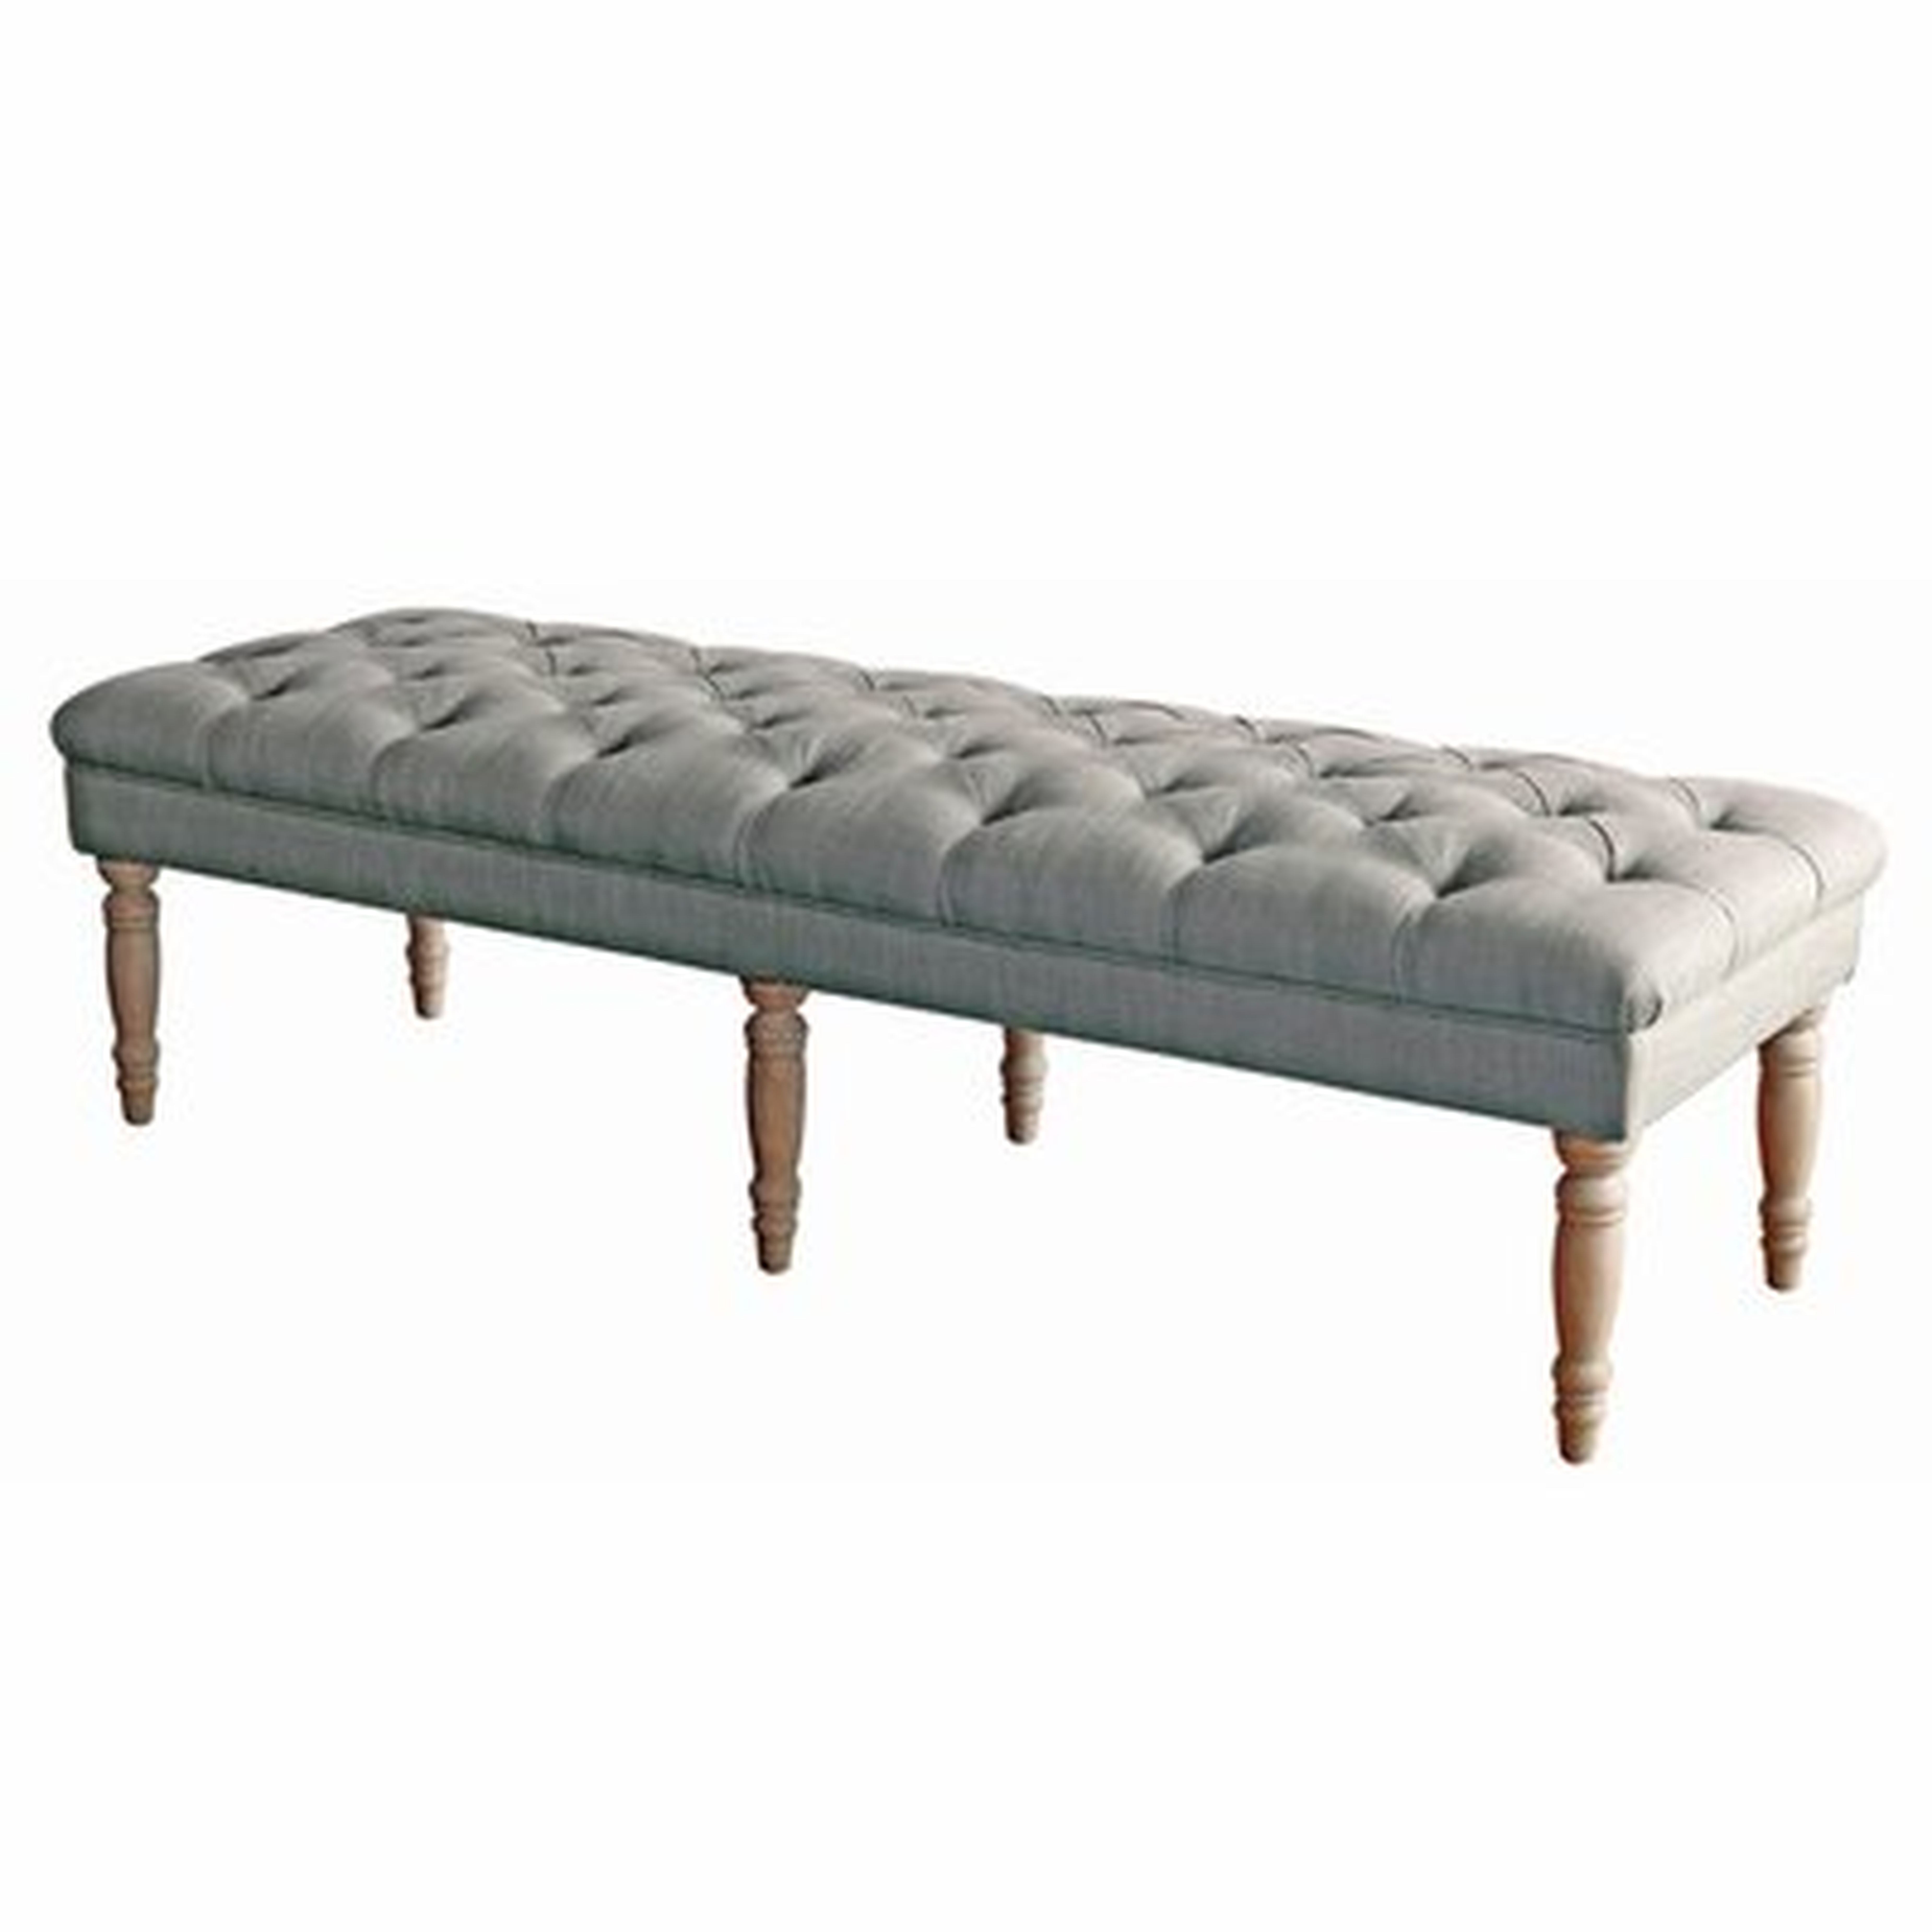 Allegro Upholstered Bench - Wayfair